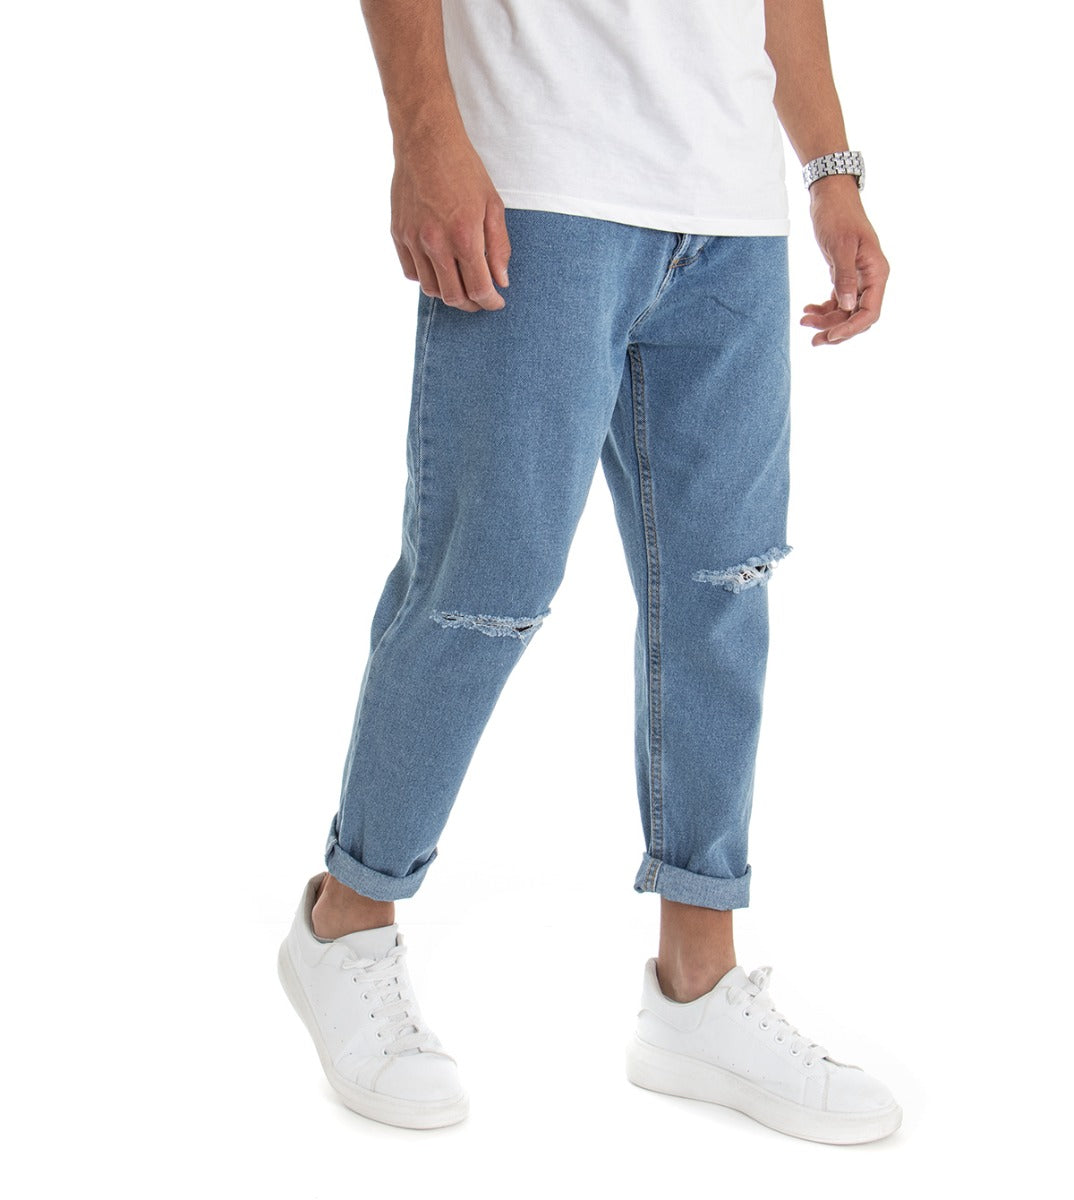 Pantaloni Jeans Uomo Loose Fit Denim Taglio Al Ginocchio Cinque Tasche Casual GIOSAL-P3018A